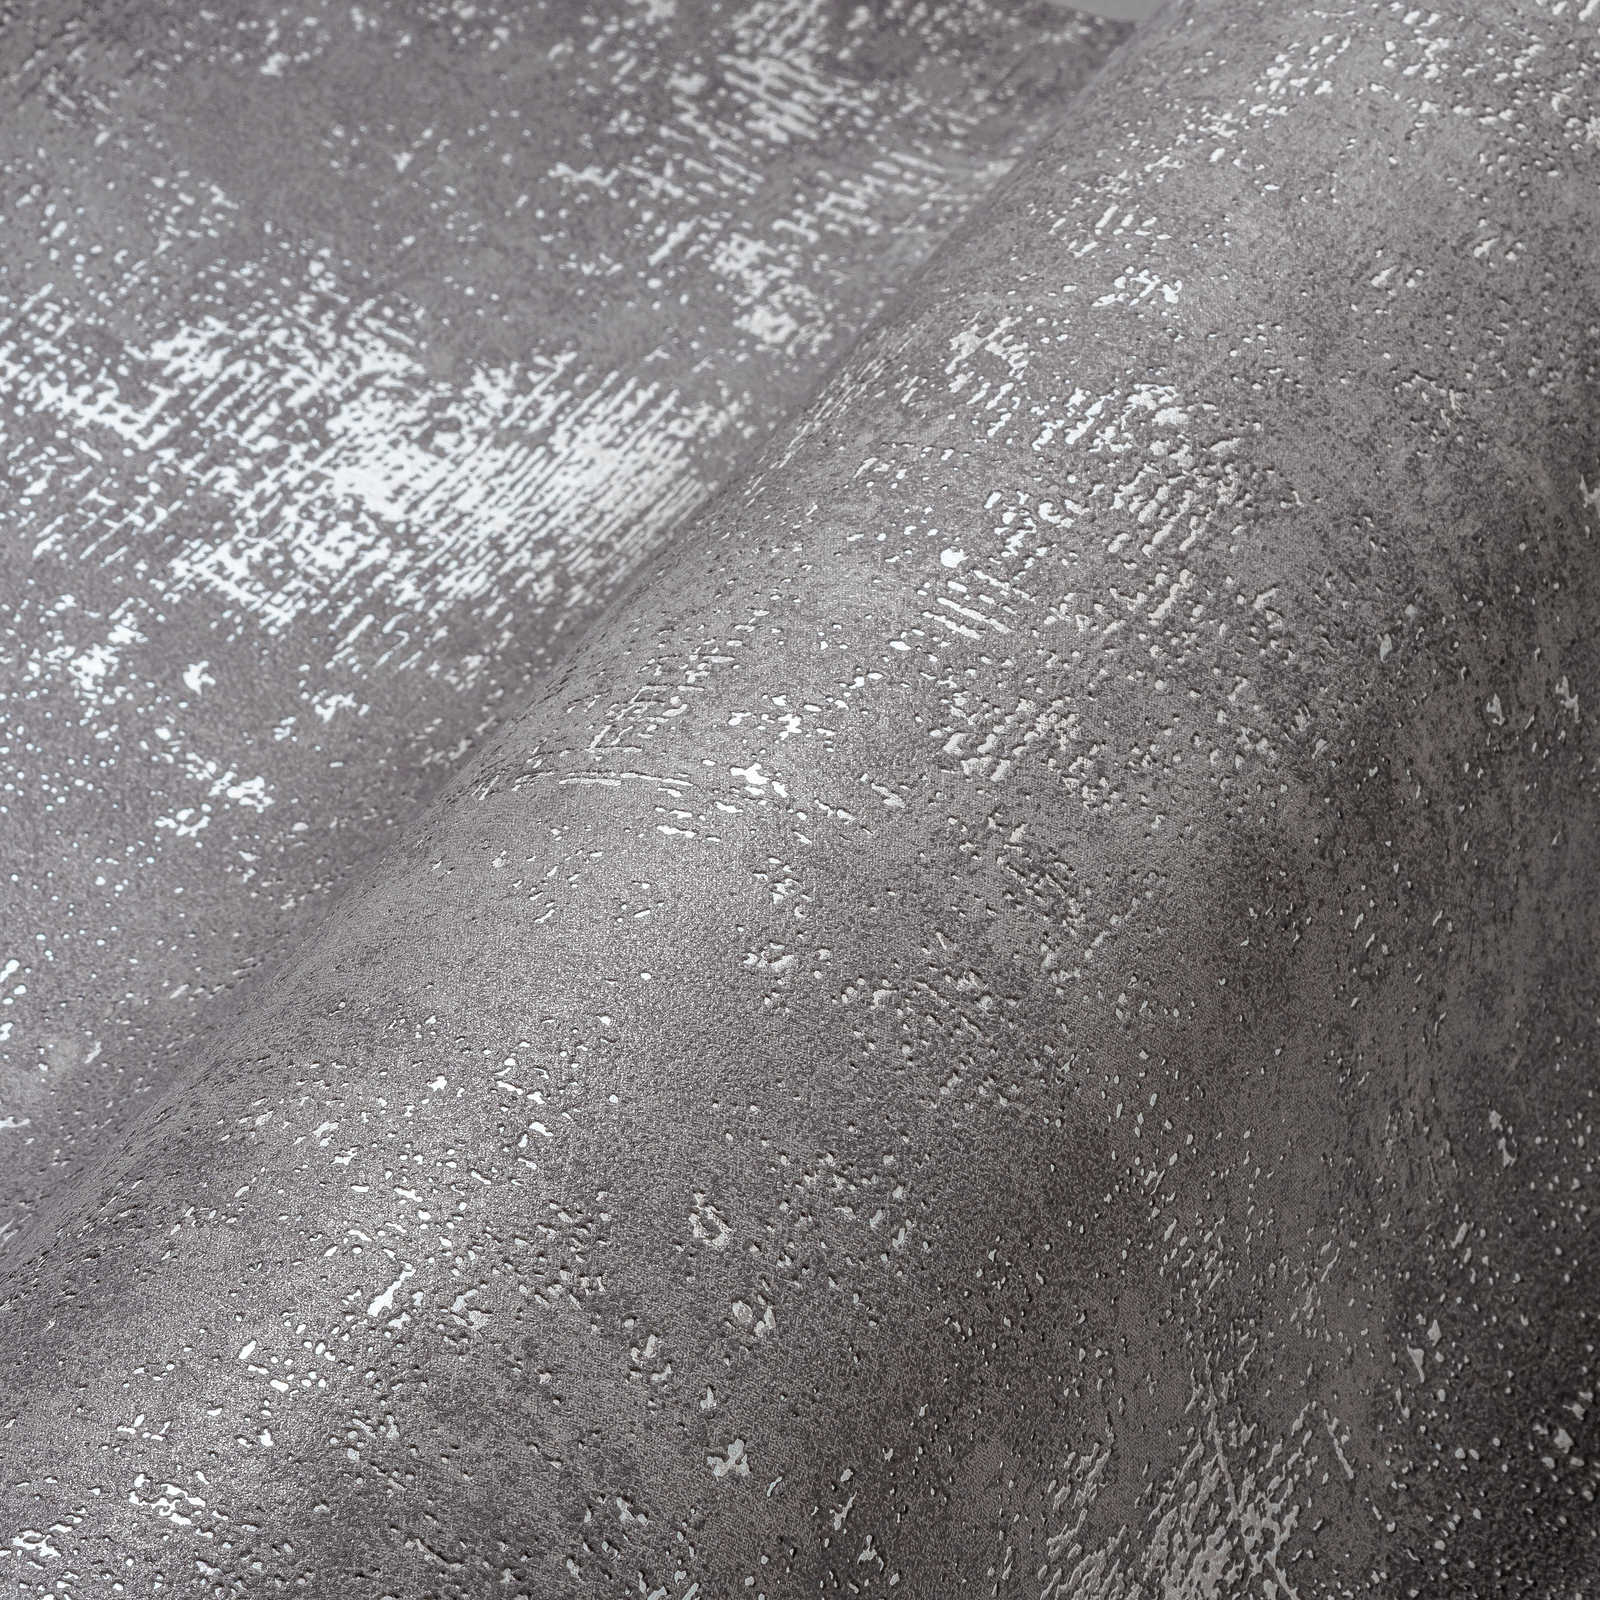             Papel pintado de aspecto de yeso gris oscuro con estructura metálica
        